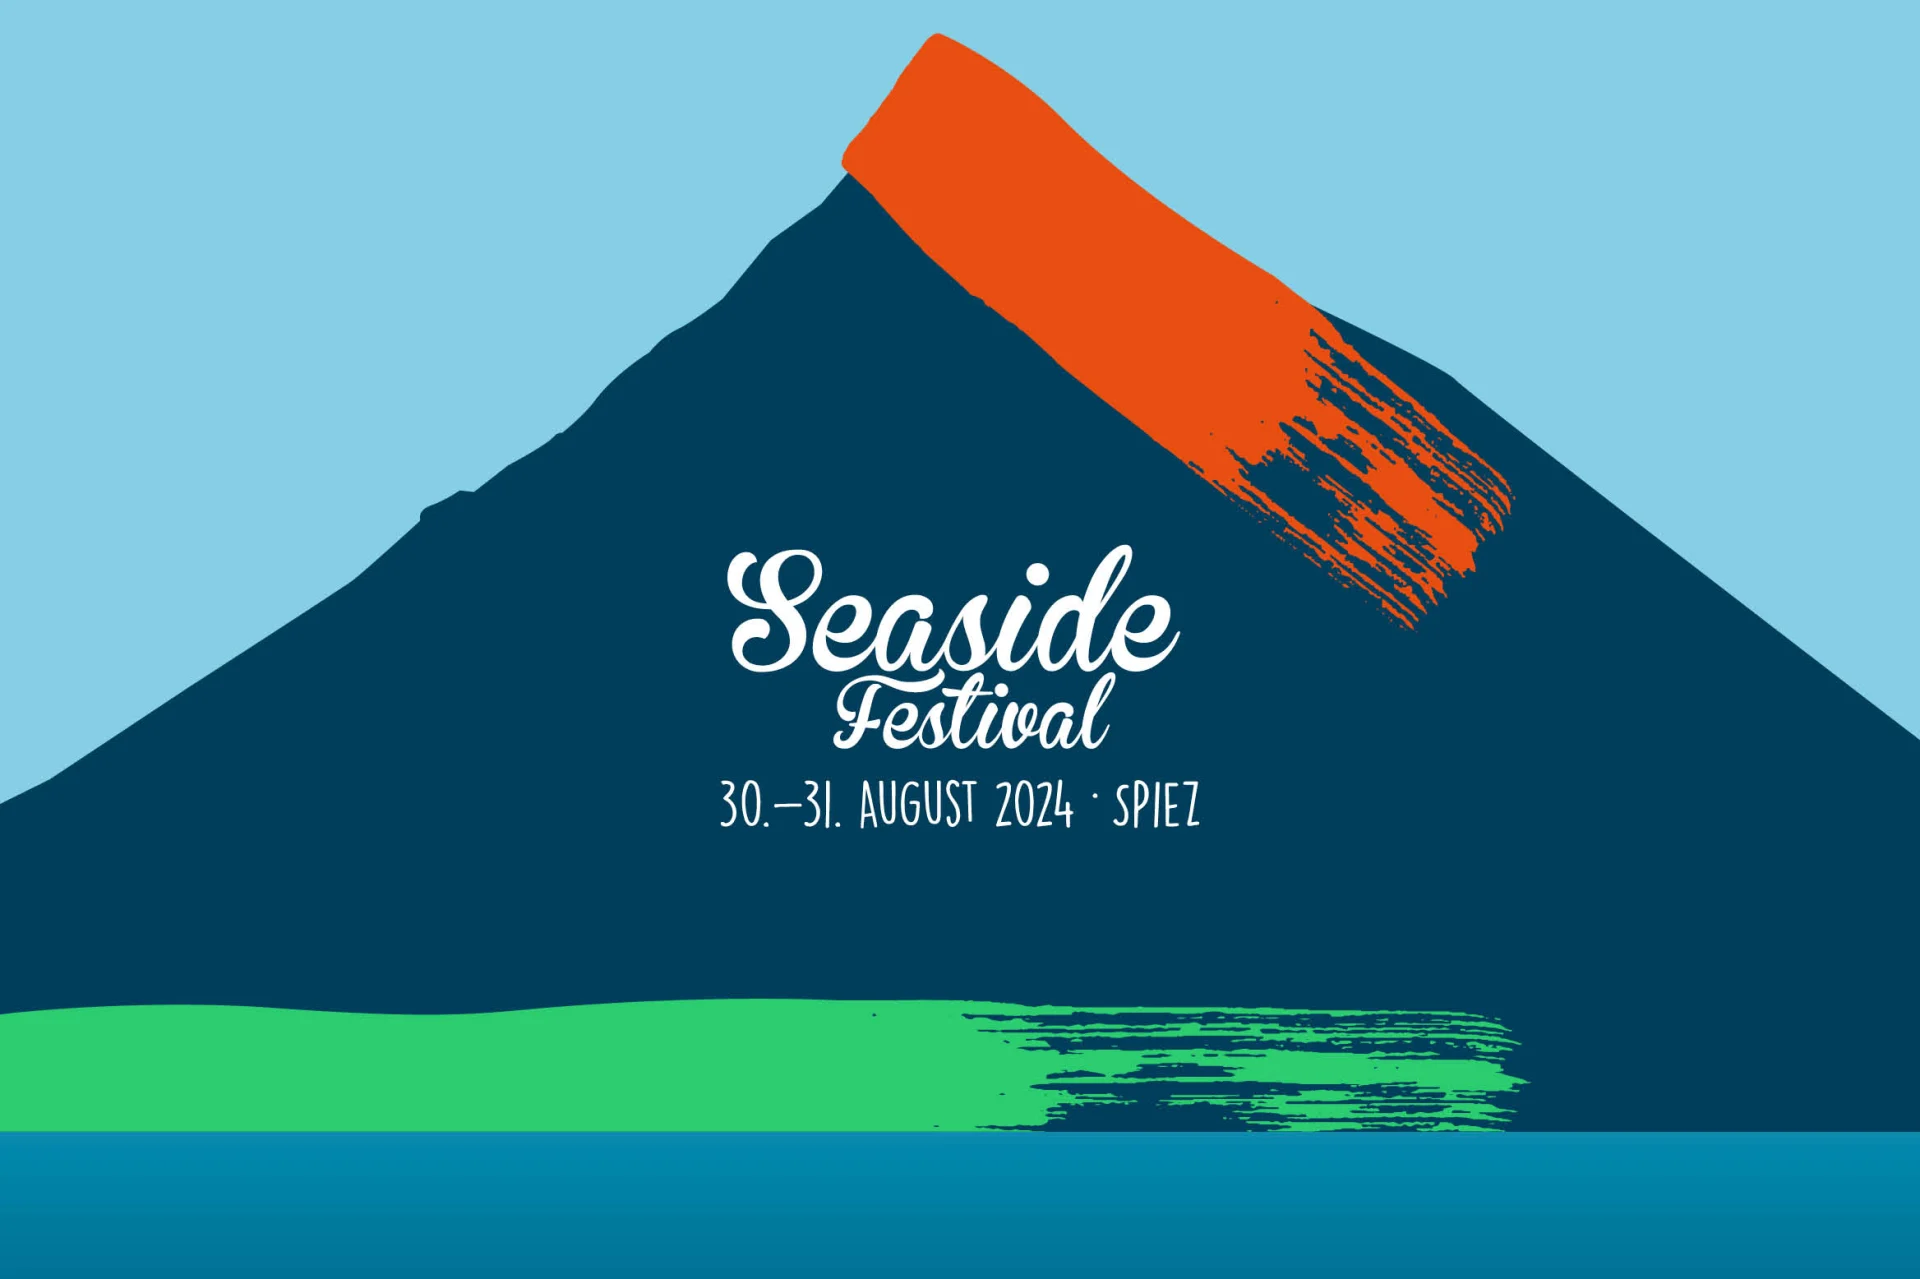 Logo of the Seaside festival Spiez